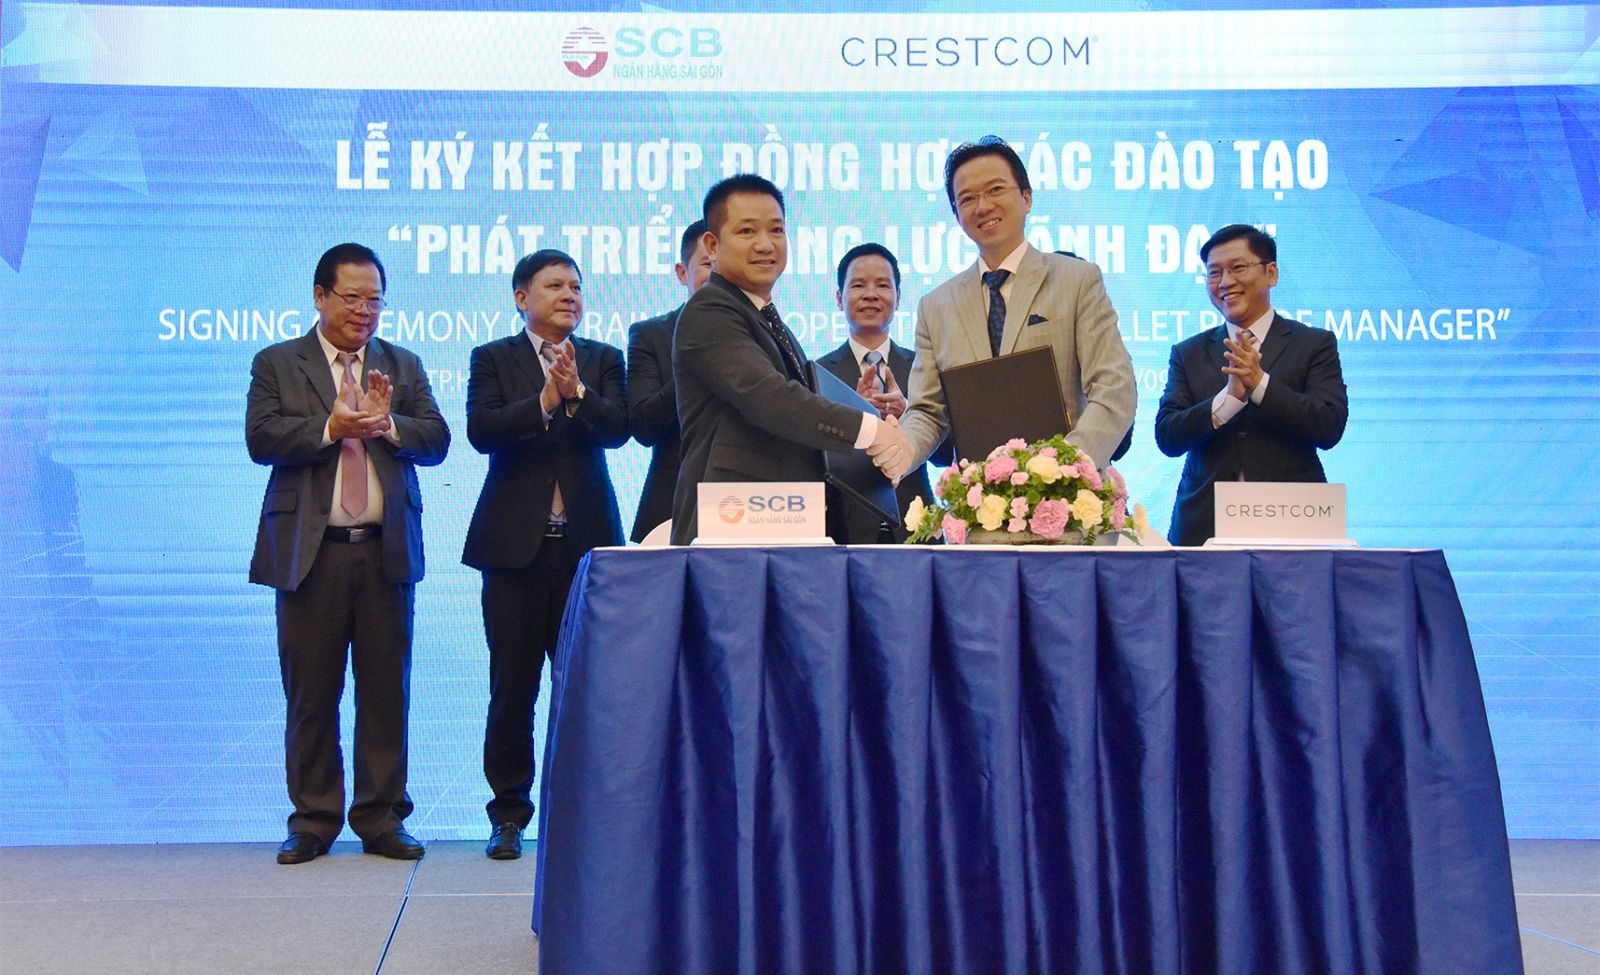 SCB ký kết hợp đồng hợp tác đào tạo “Phát triển năng lực lãnh đạo” với Crestcom International.